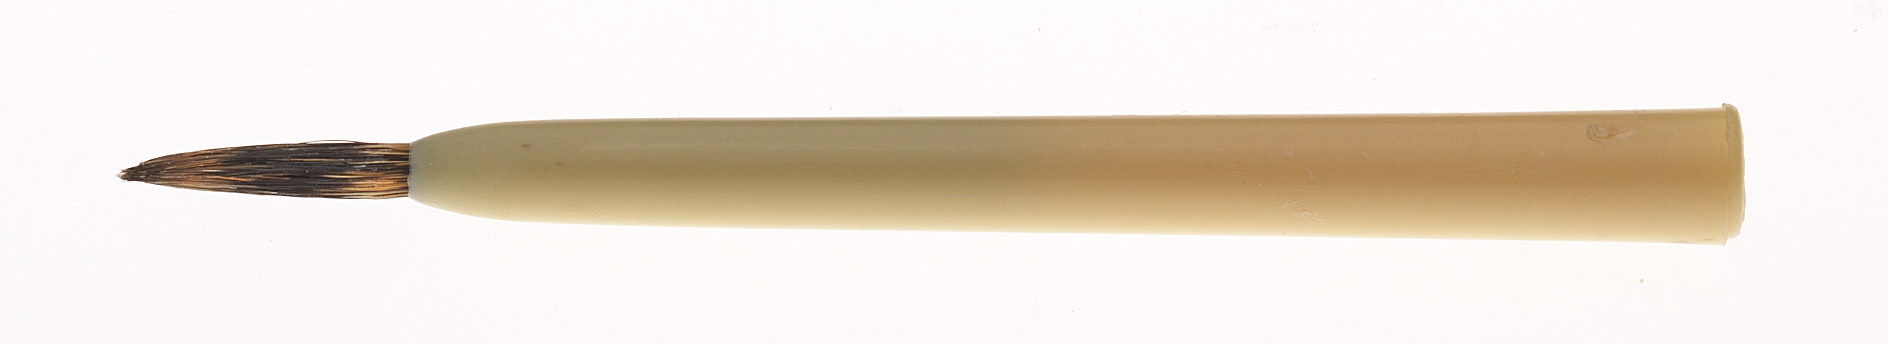 Borax brush, size 3